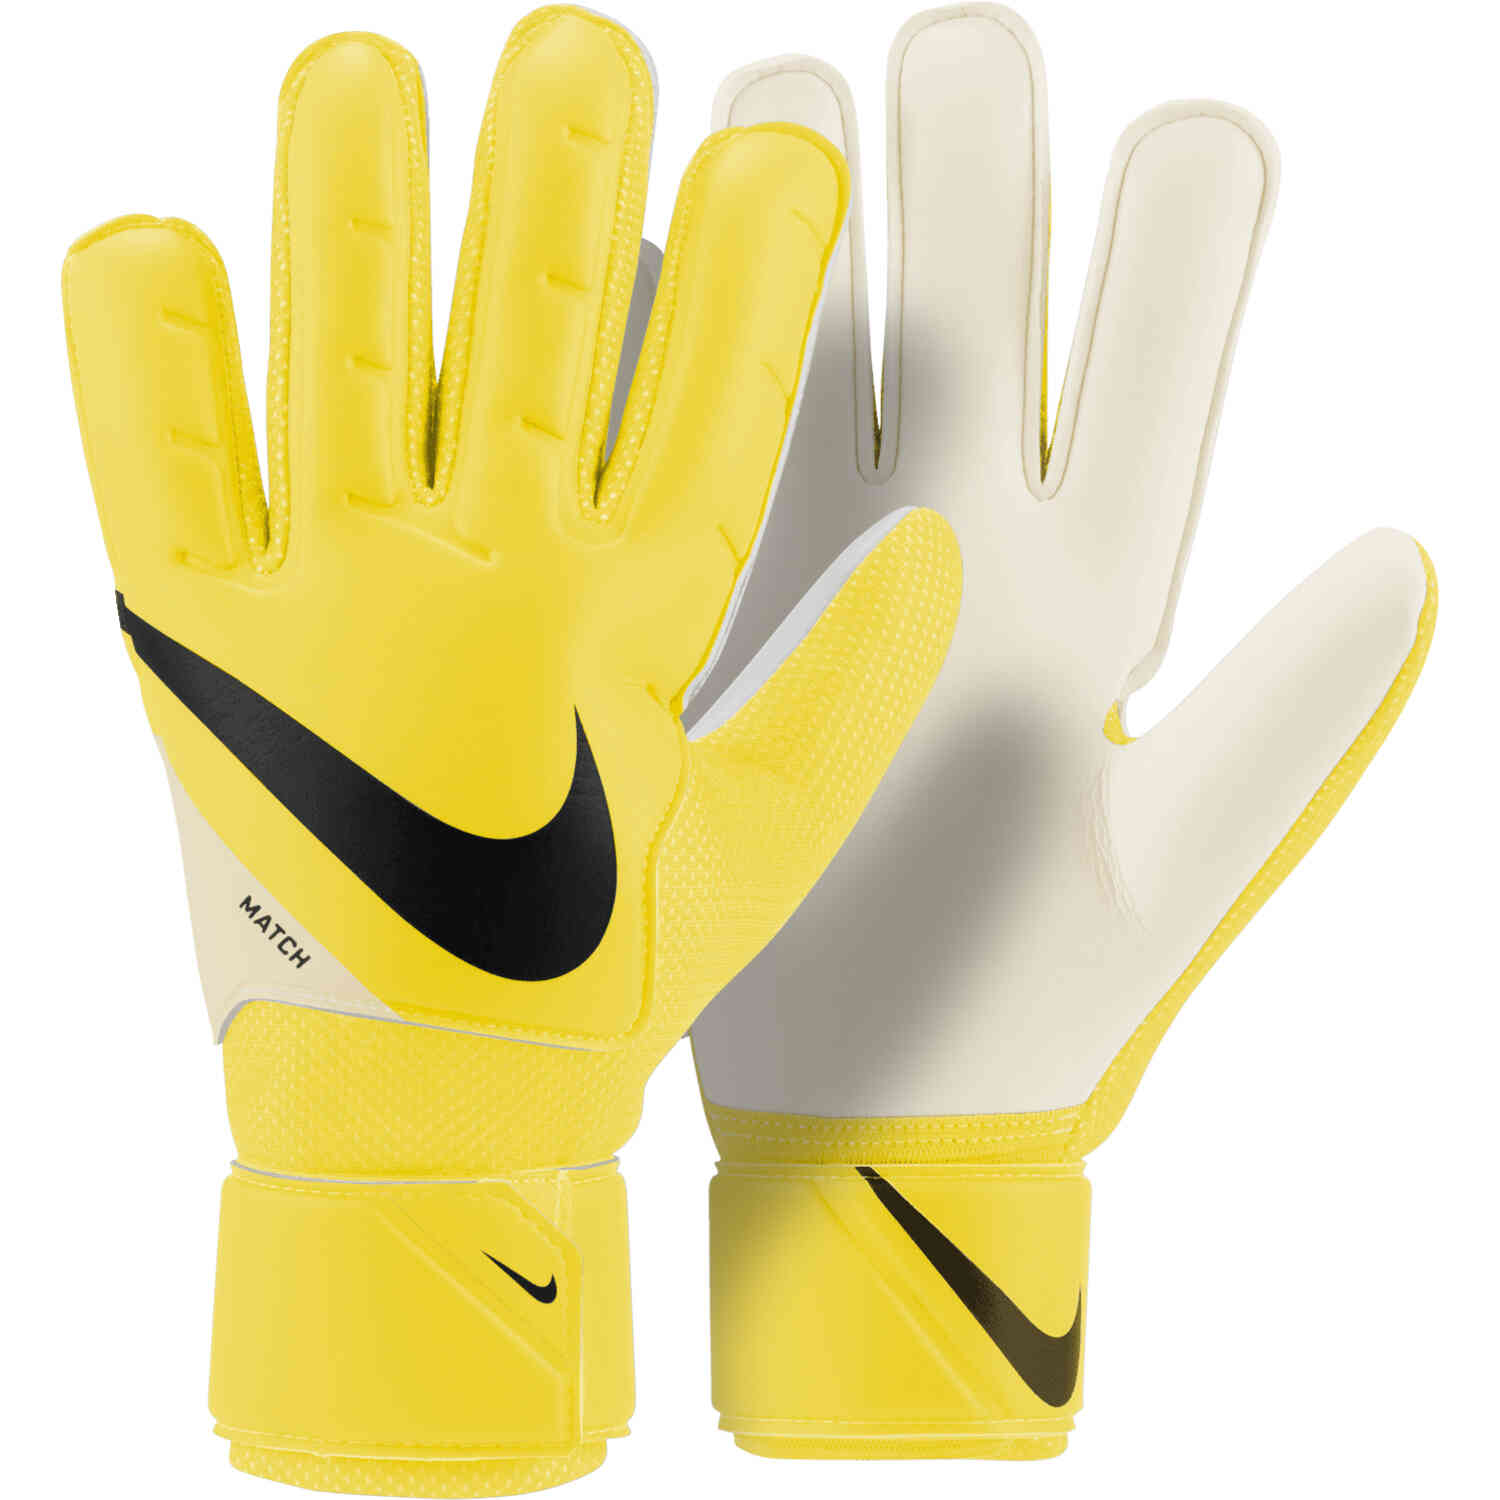 gaan beslissen niet Schandelijk Nike Match Goalkeeper Gloves - Lucent Pack - SoccerPro